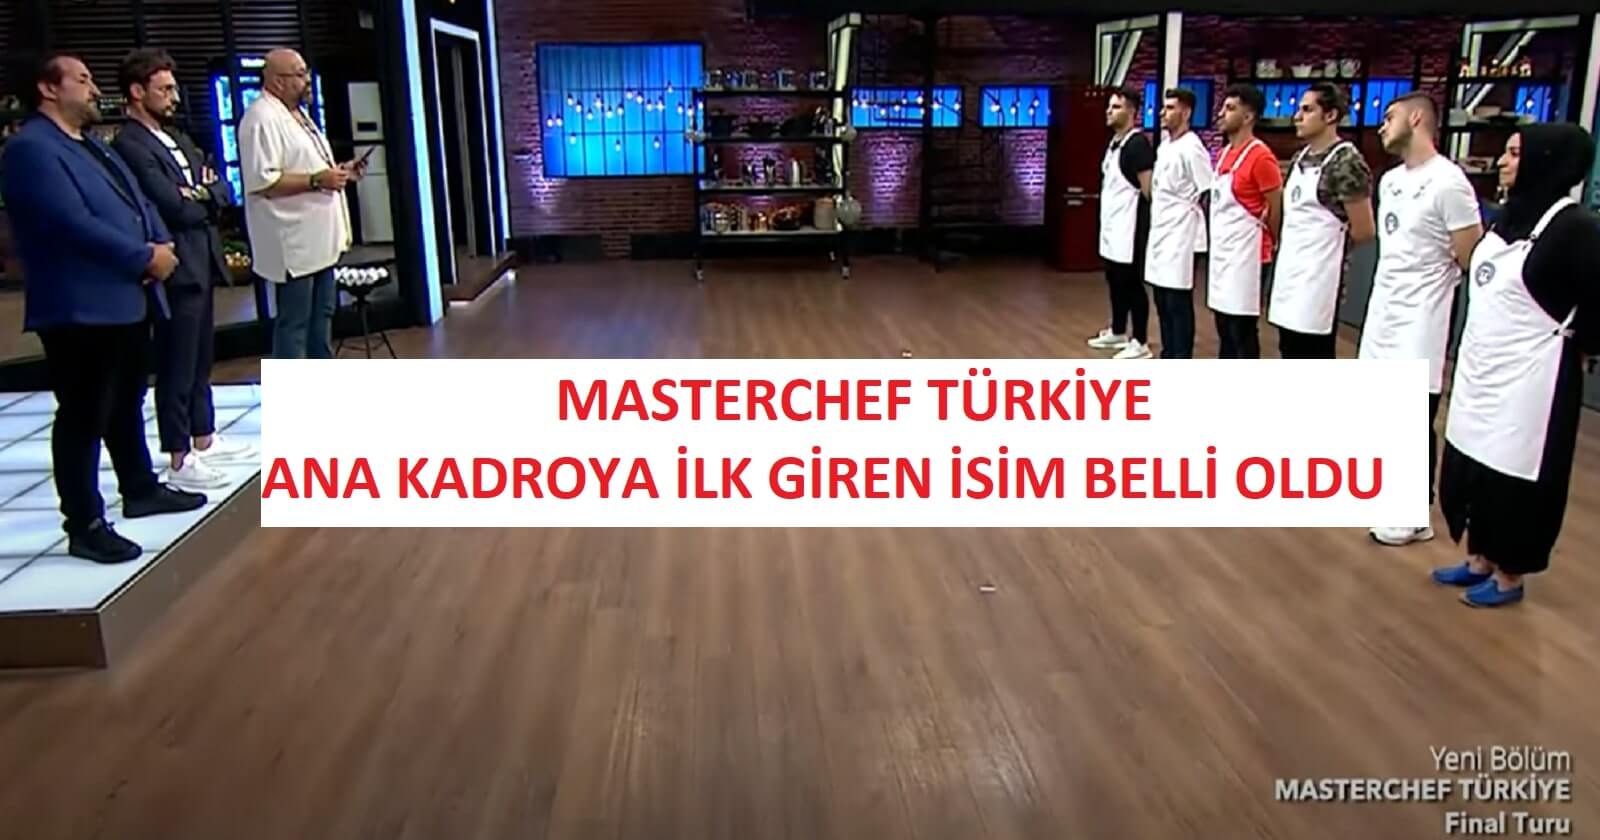 MasterChef Turkiye Final turunu ilk kazanan isim kim MasterChef Türkiye ana kadroya giren ilk yarışmacı belli oldu